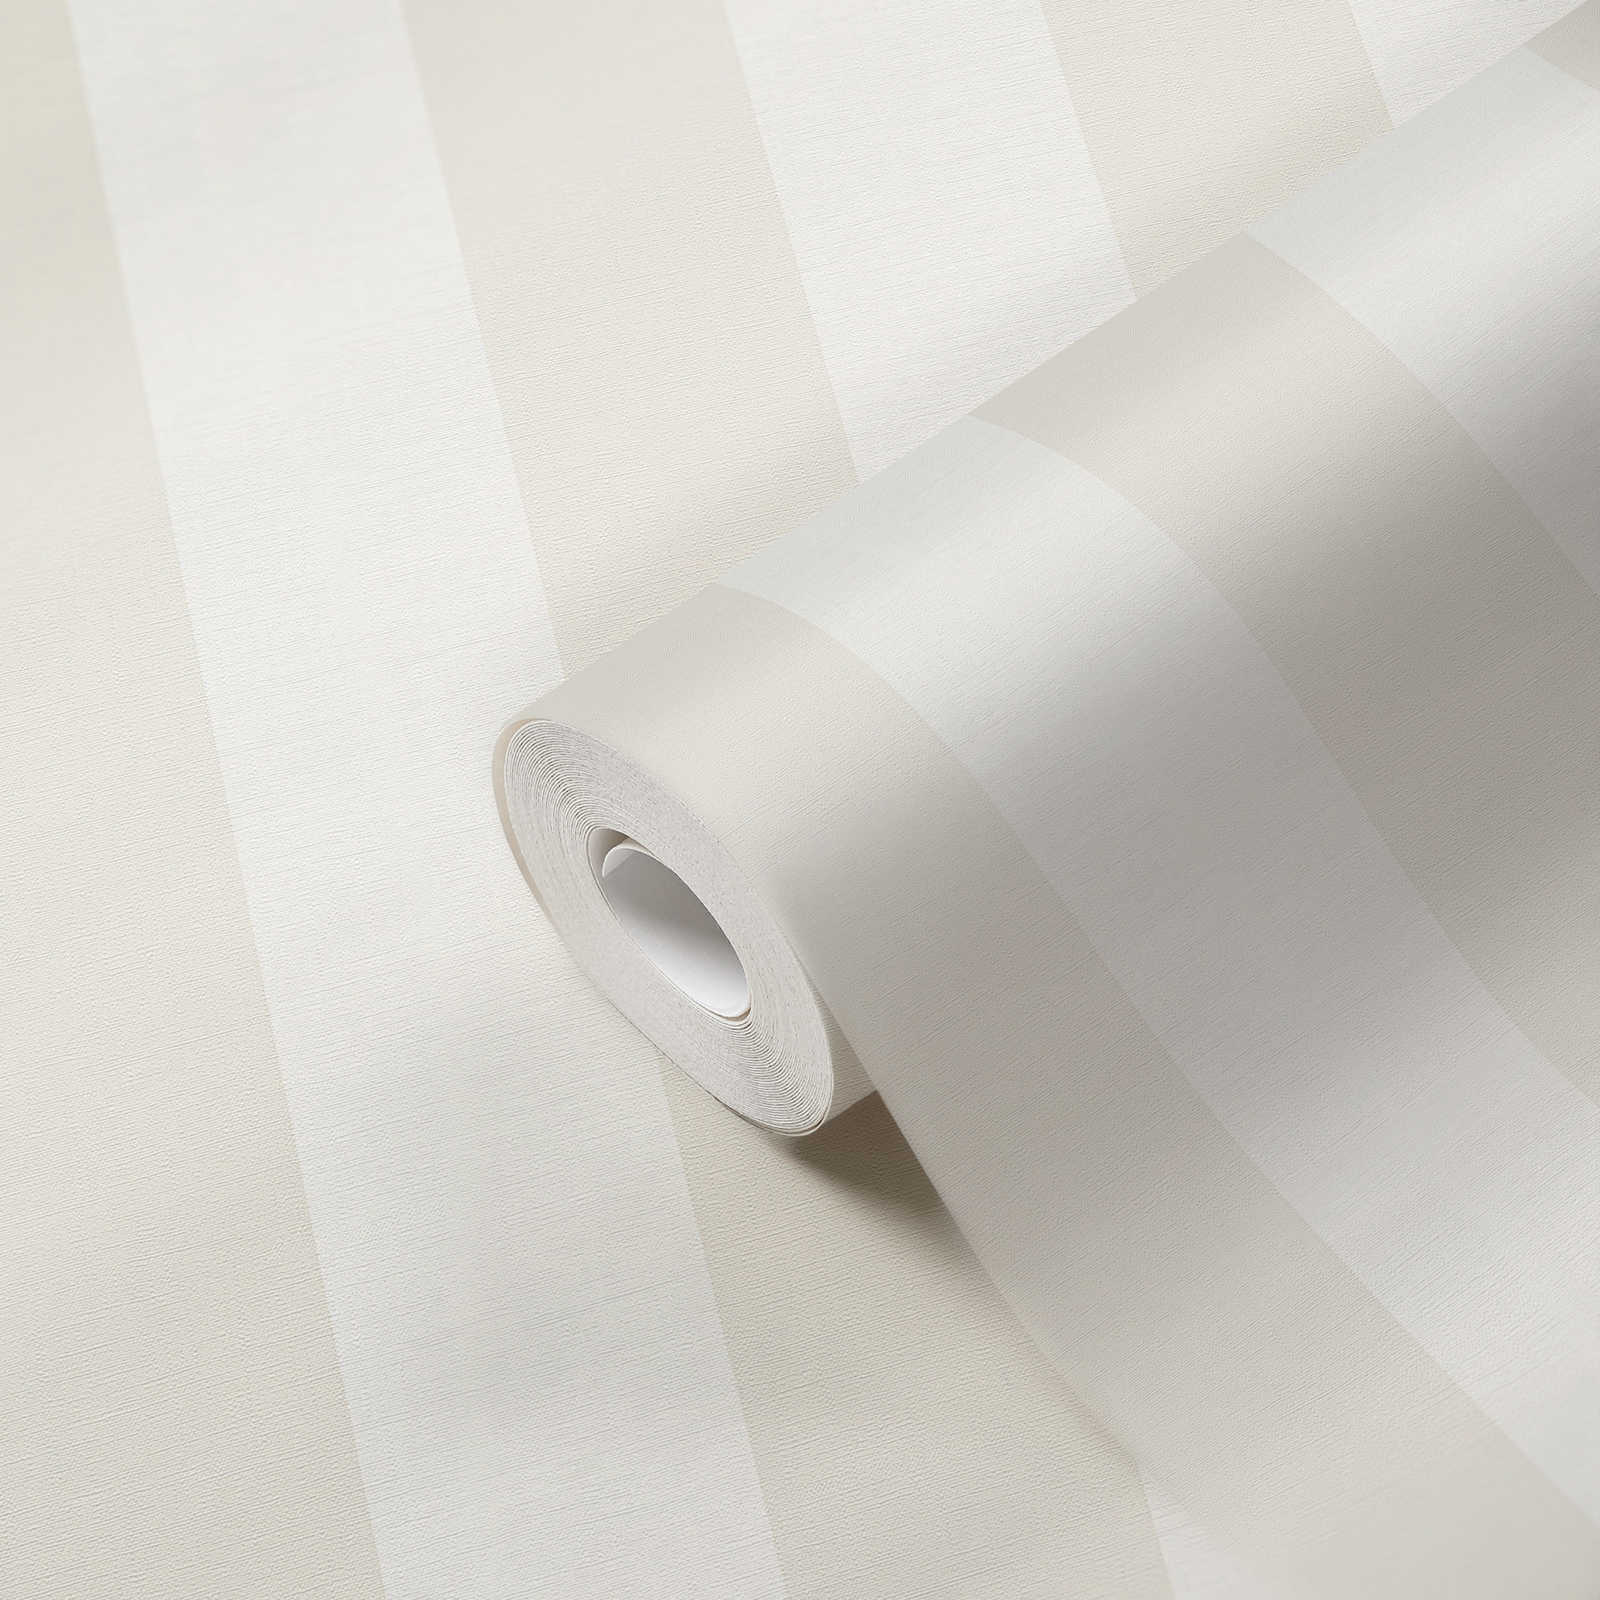             Blockstreifen-Tapete mit Textil-Look für junges Design – Beige, Weiß
        